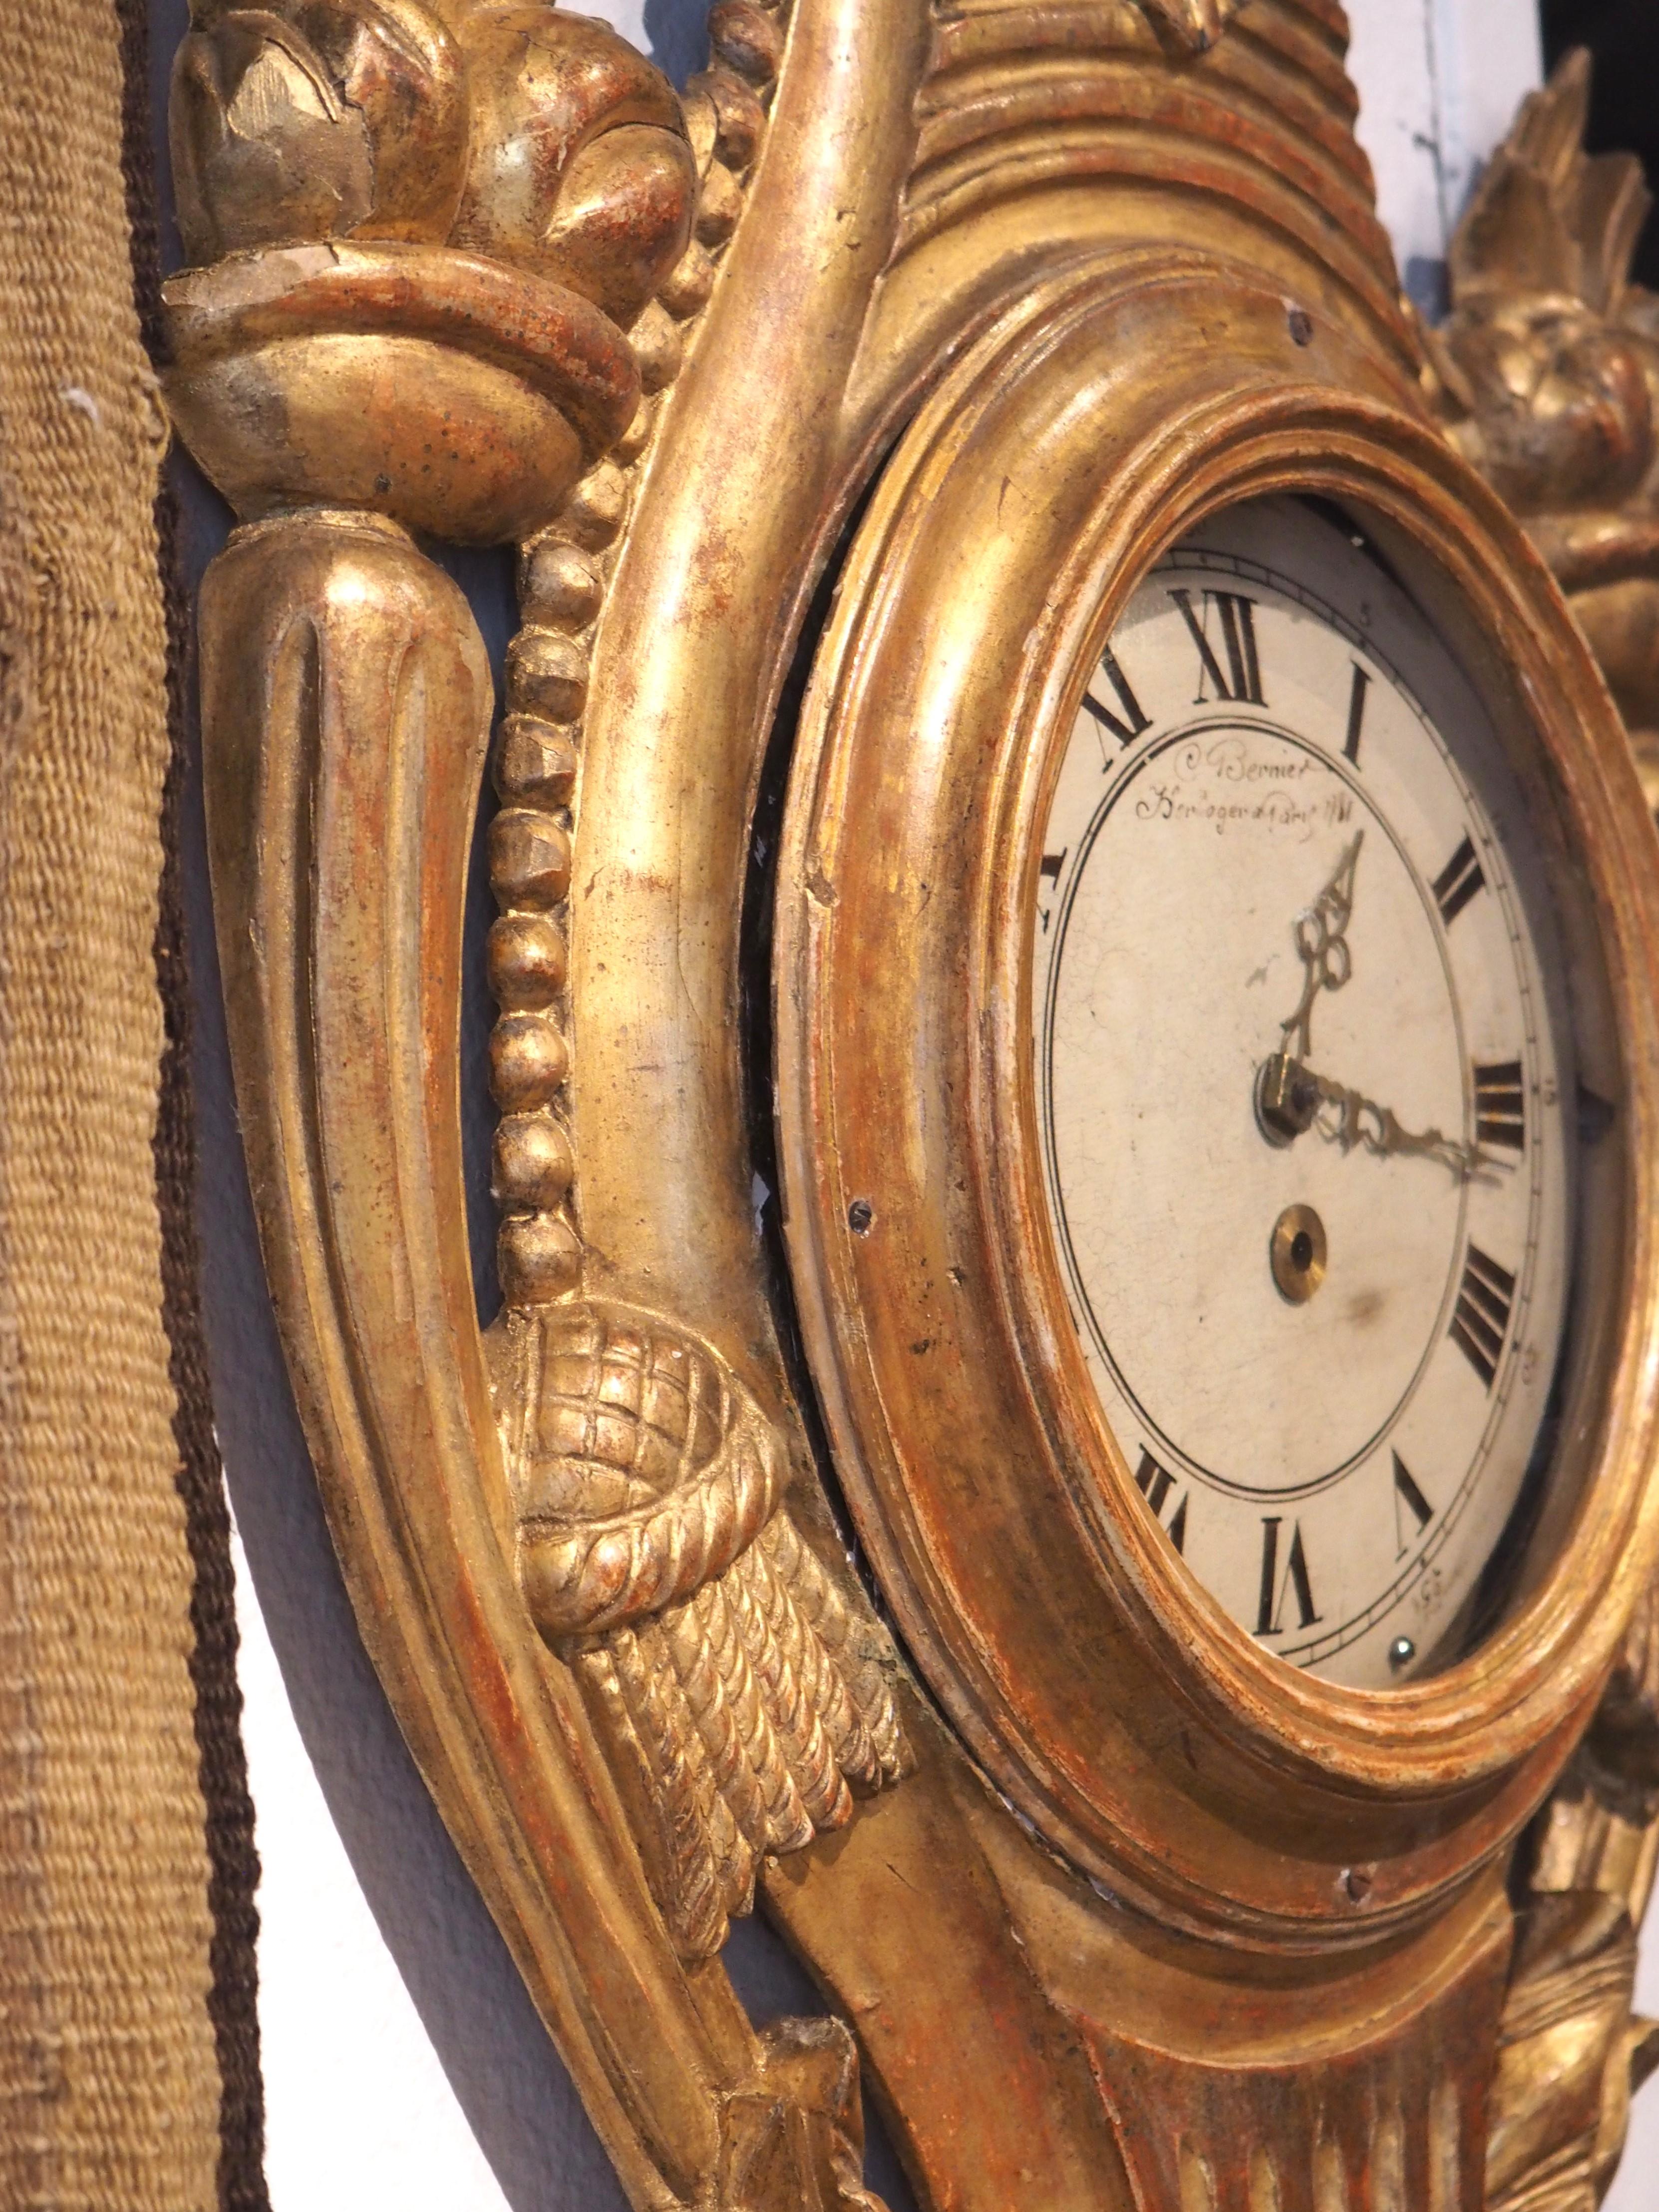 Dieses vergoldete Barometer und Kartell aus der Zeit um 1875 wurde in Frankreich im Stil von Ludwig XVI. handgeschnitzt. Die Stücke sind identisch geschnitzt, wobei das Highlight ein detailliert geflochtener Korb ist, der mit einer Reihe von